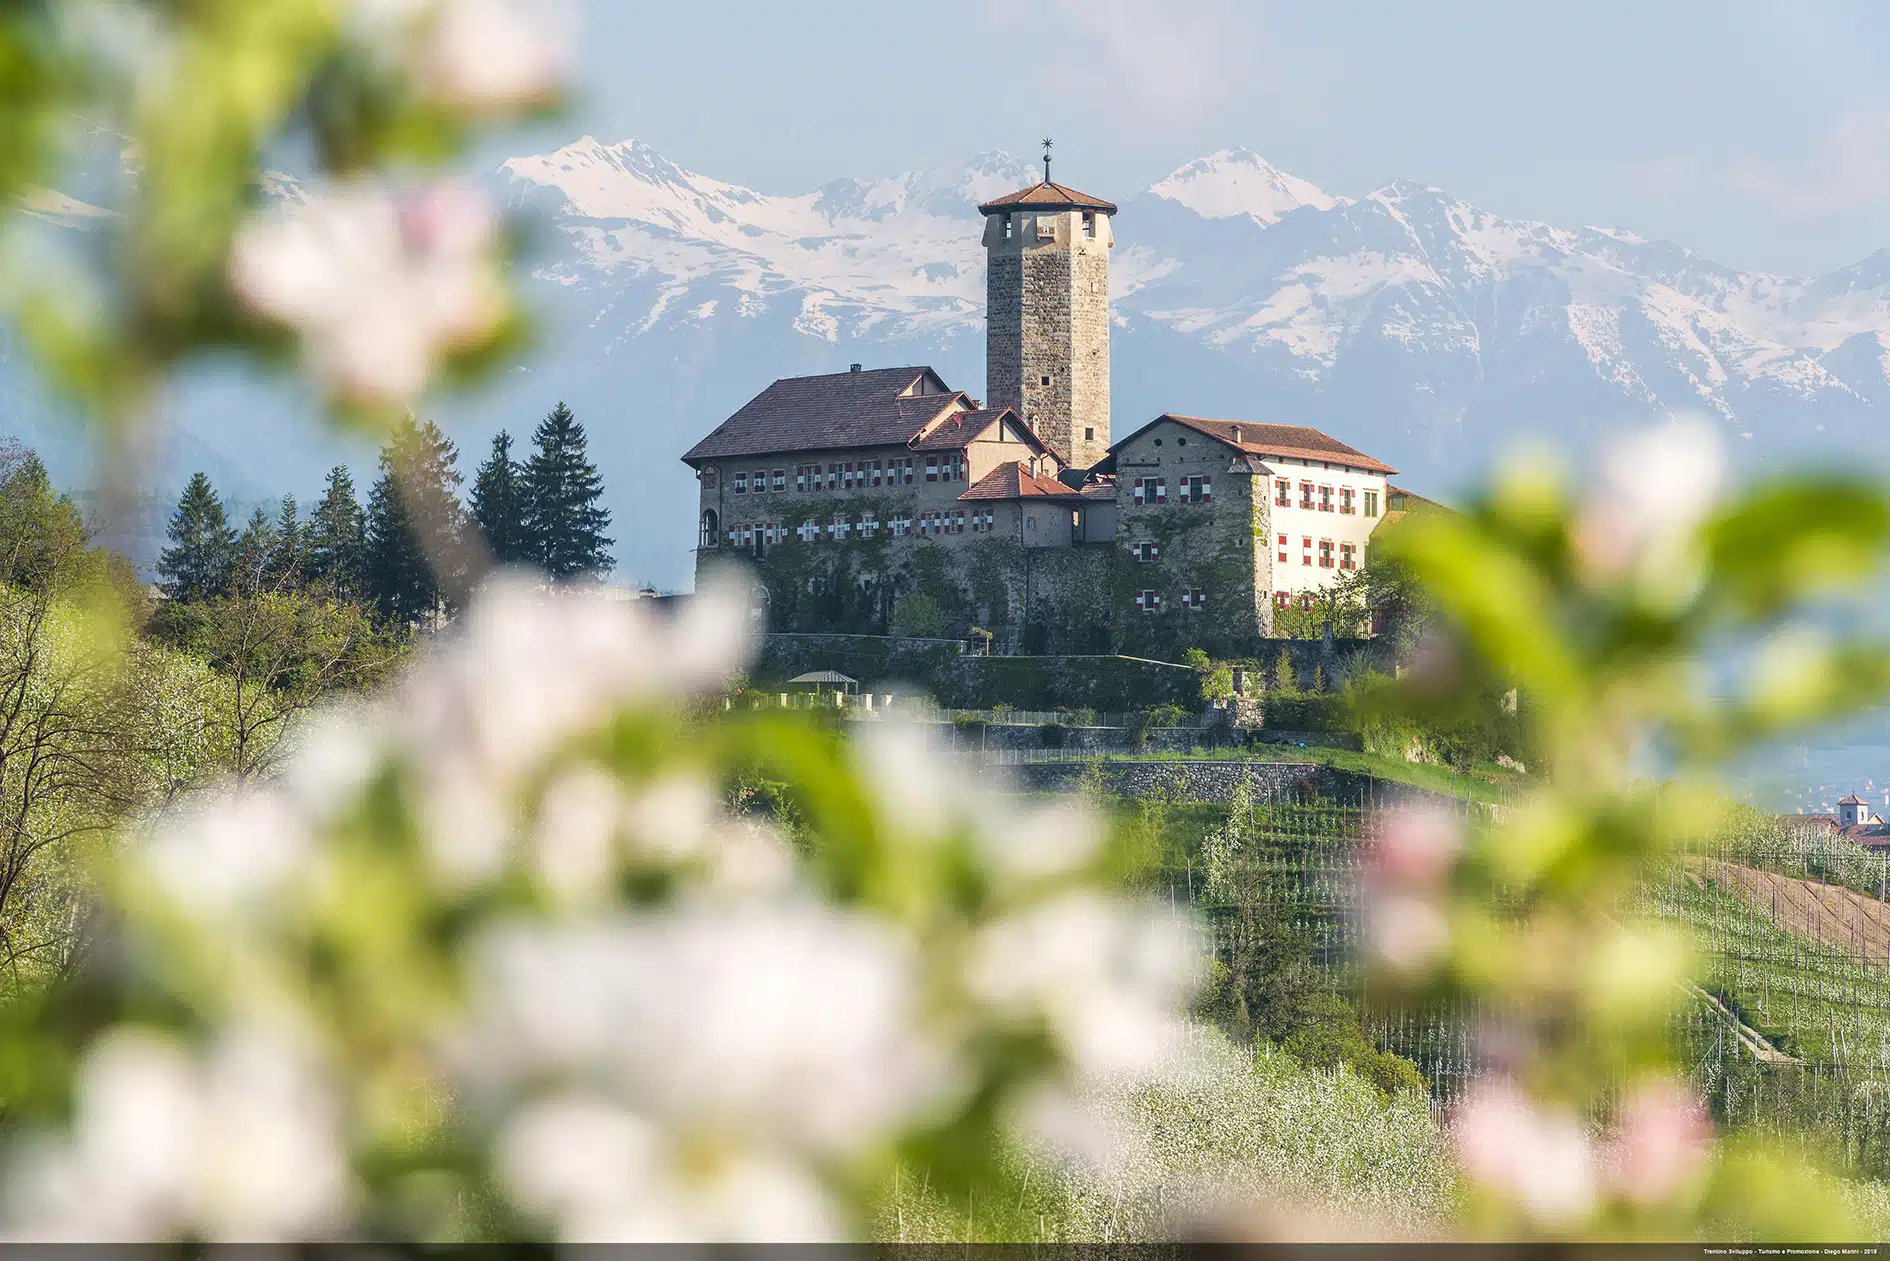 In Trentino tra castelli, boschi e laghi